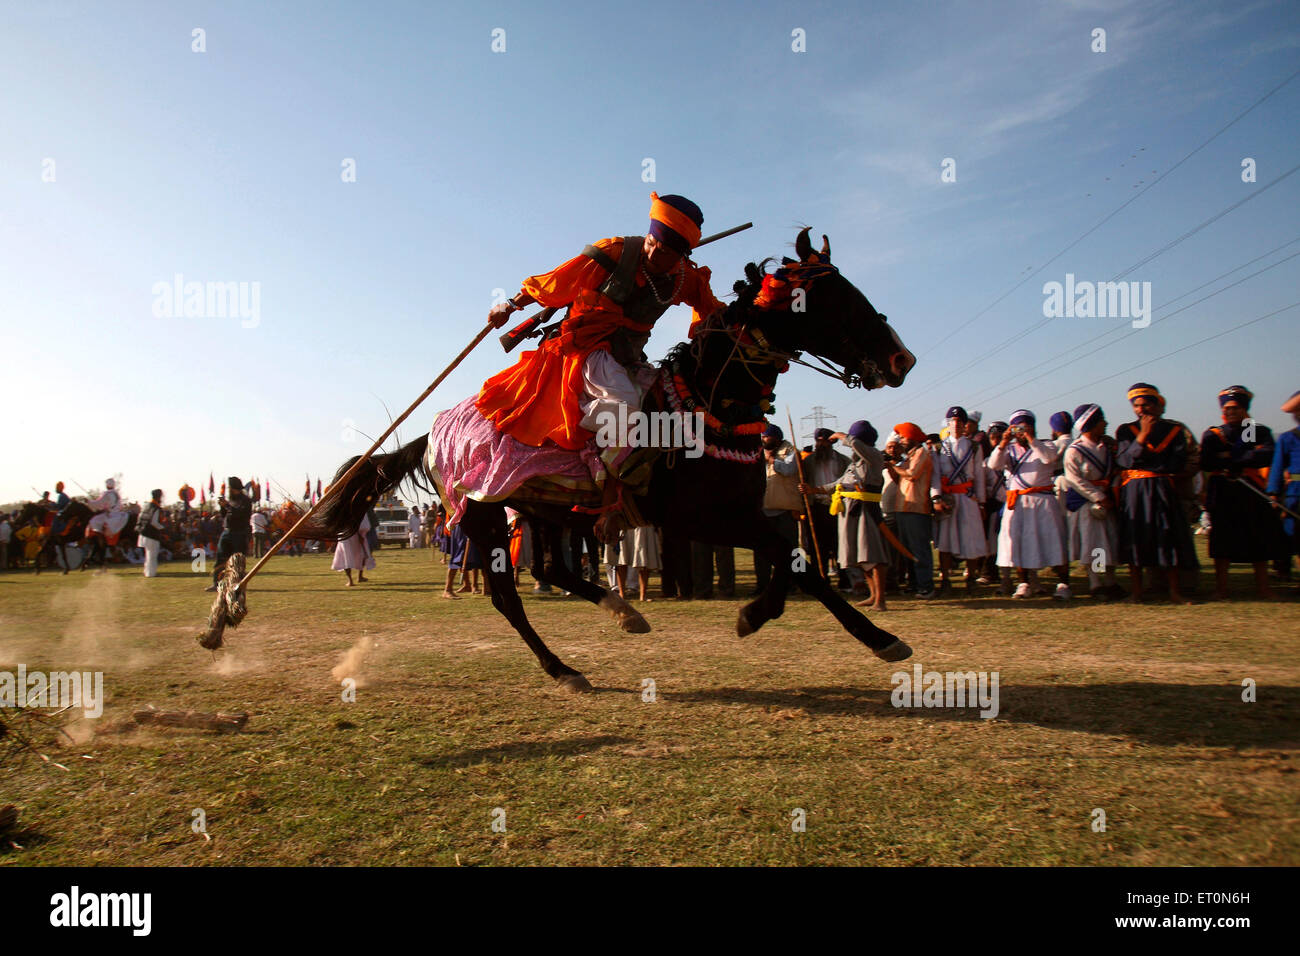 Guerrier Sikh Nihang ou exerçant son spear faisant tente de stabiliser l'équitation sur festival Anandpur sahib Road Hola punjab inde Banque D'Images